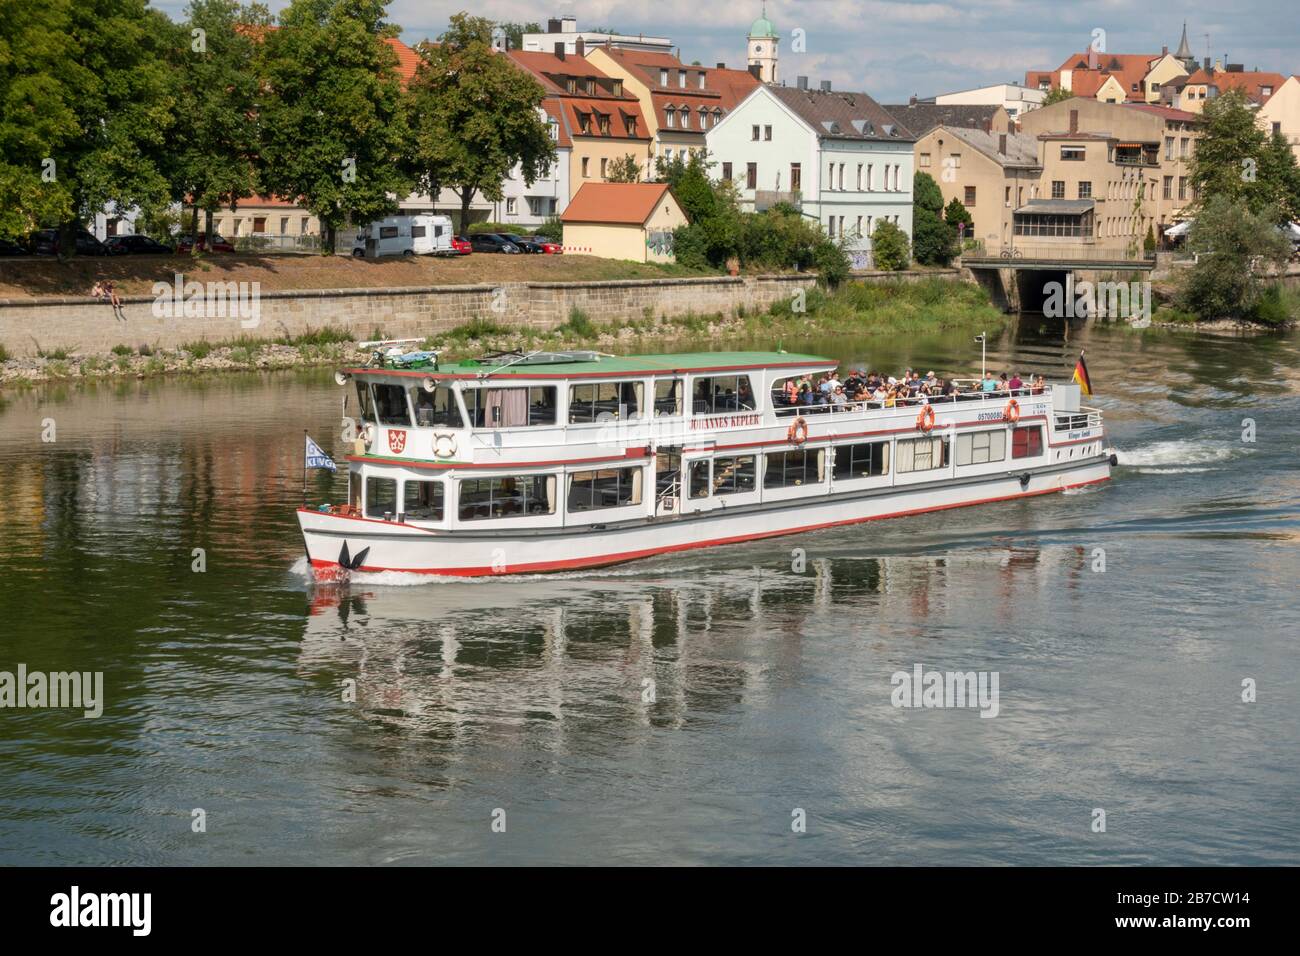 Le bateau touristique Johannes Kepler sur le Danube à Regensburg, en Bavière, en Allemagne. Banque D'Images